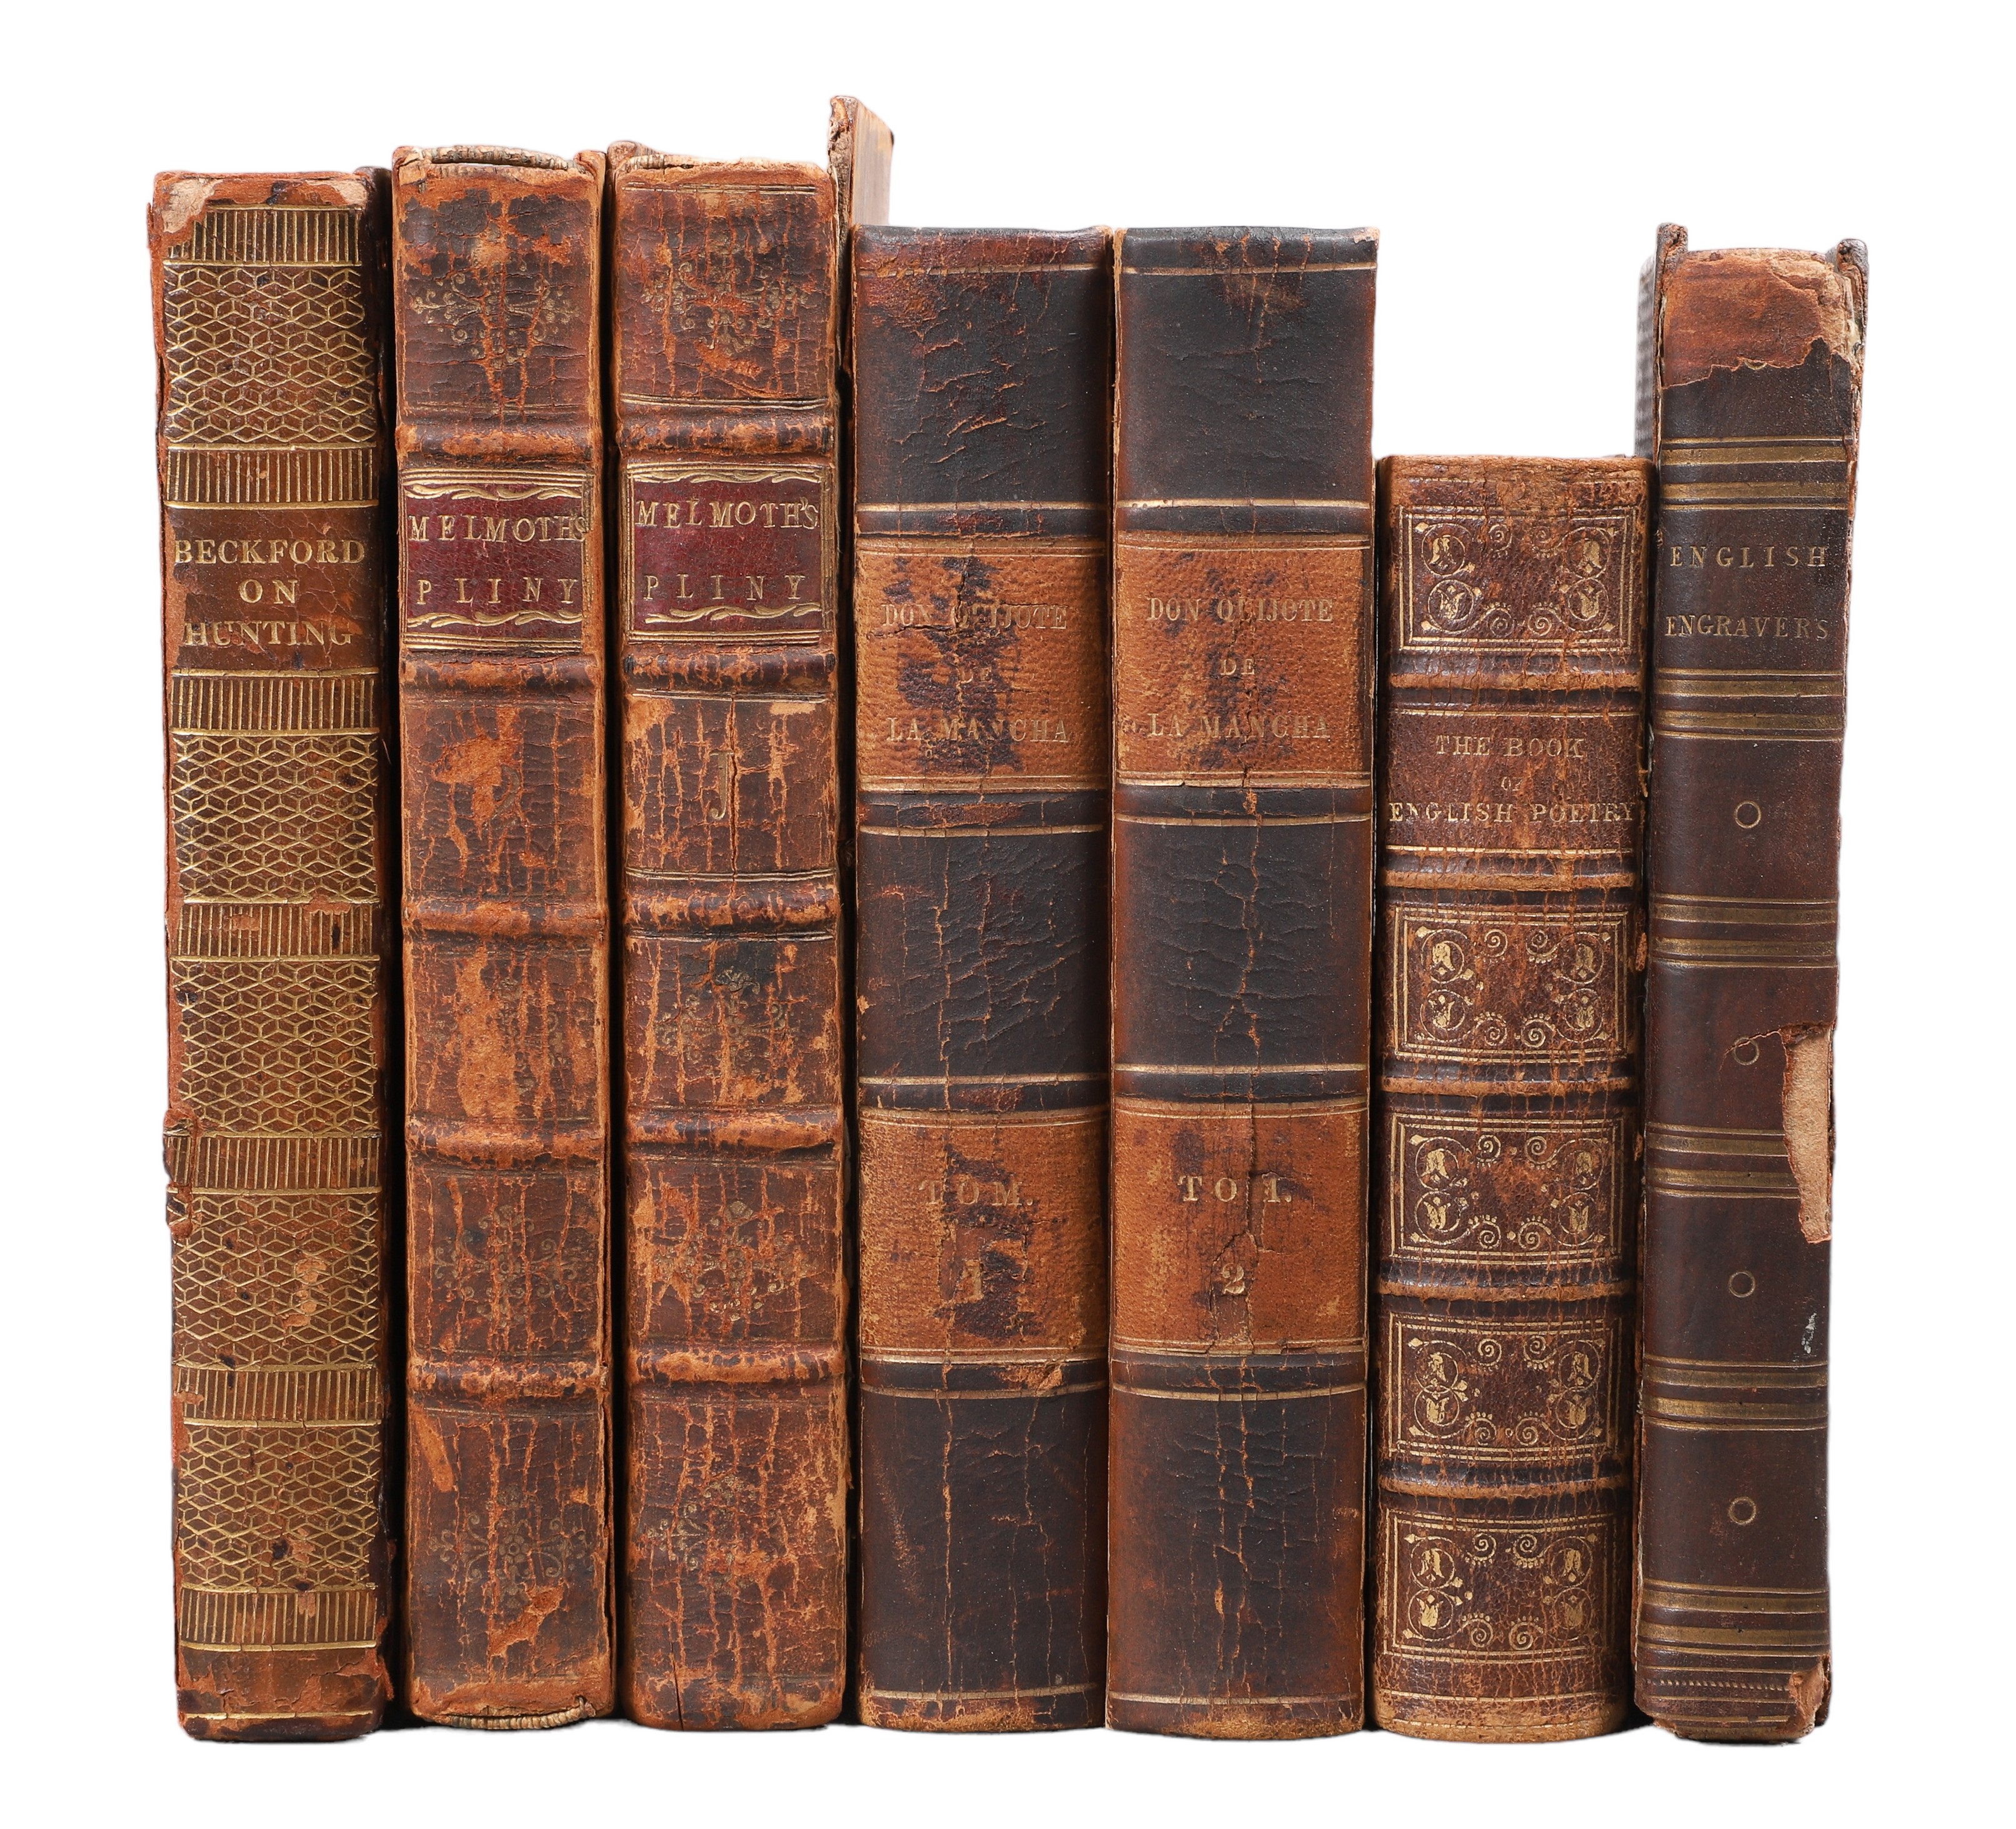 Seven 18th and 19th century books  2e13a4